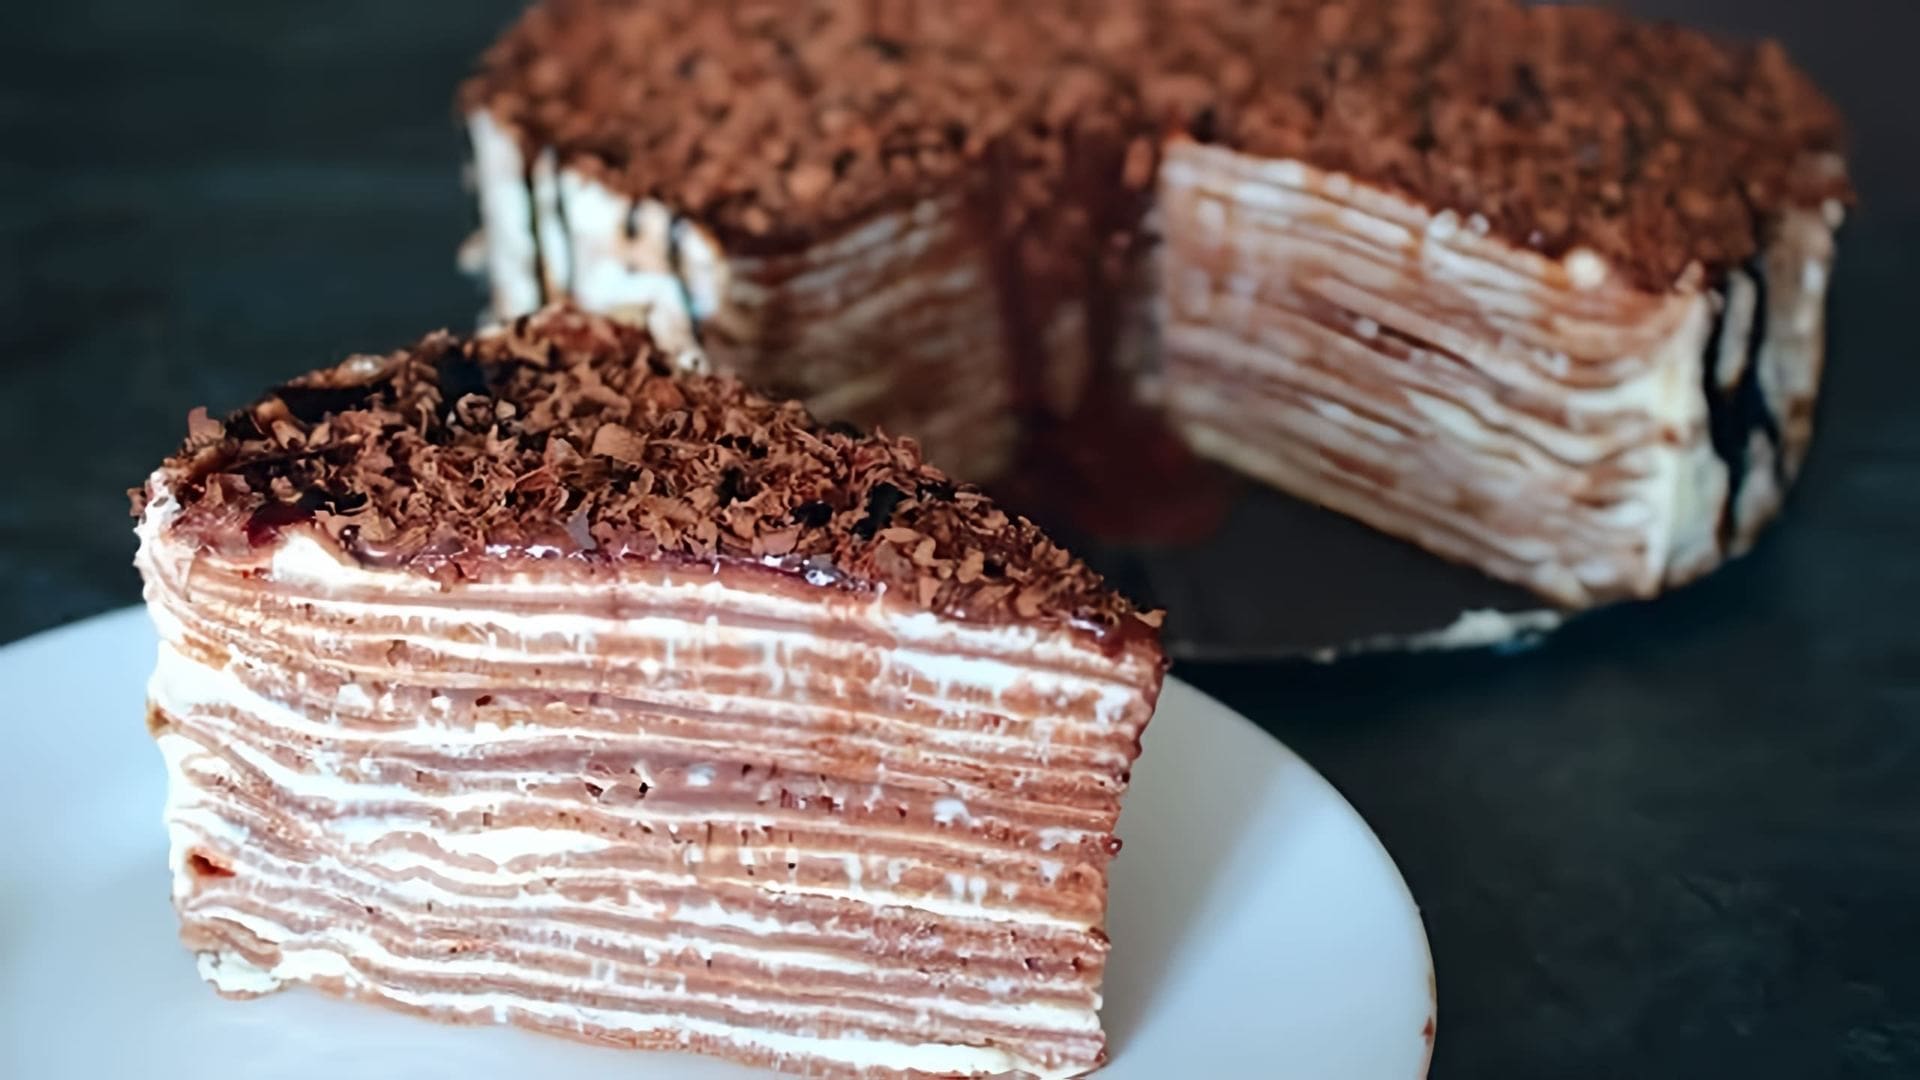 В этом видео демонстрируется рецепт шоколадного блинного торта, который можно приготовить без использования духовки